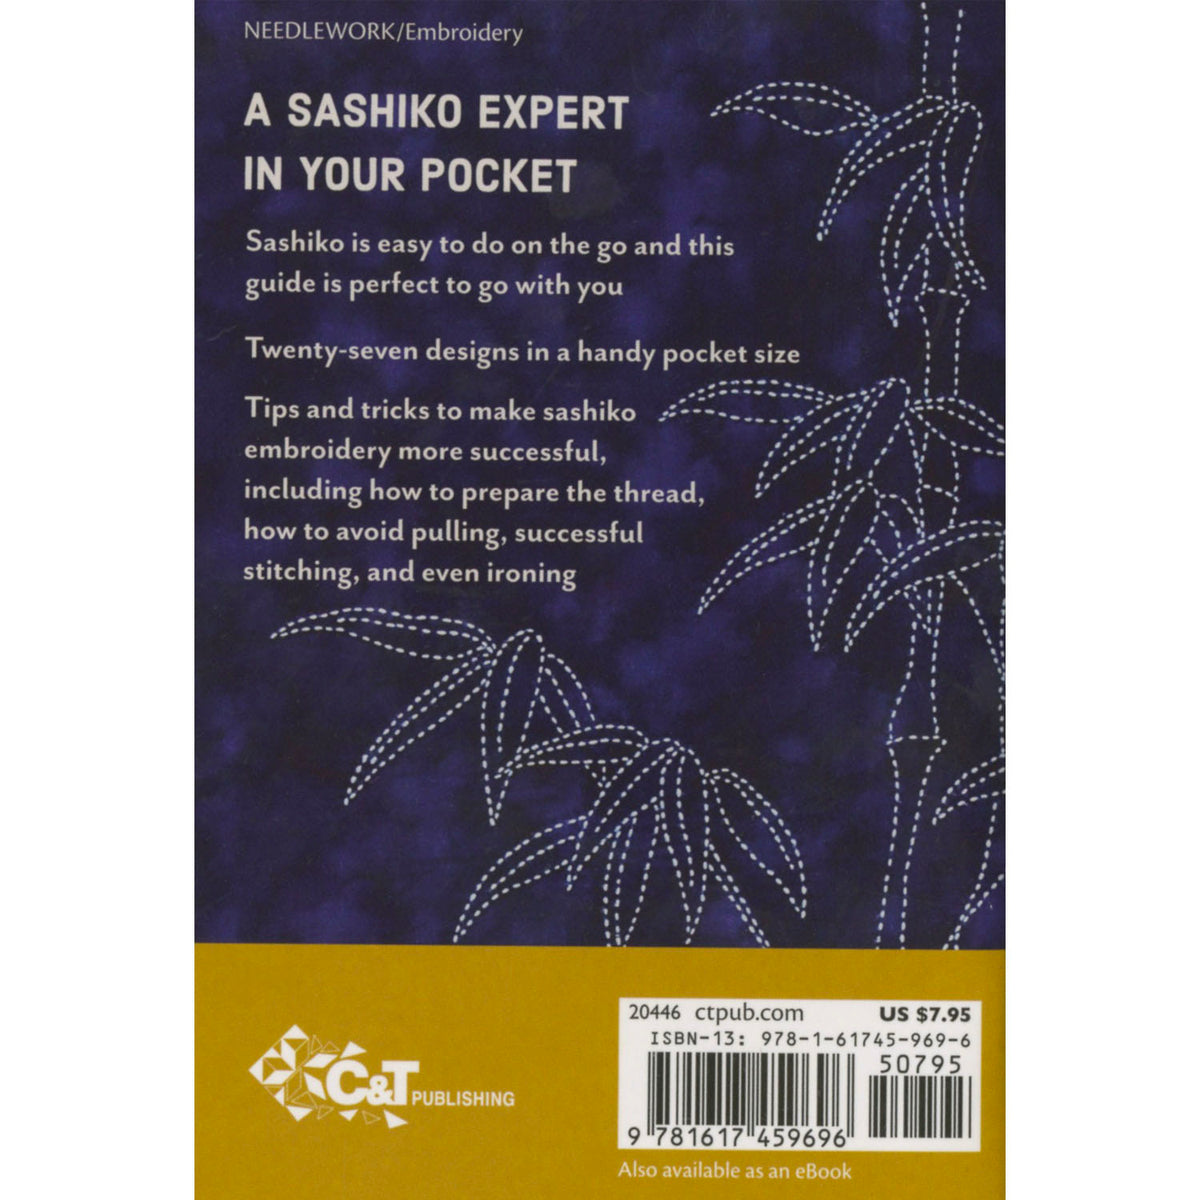 Sashiko Handy Pocket Guide